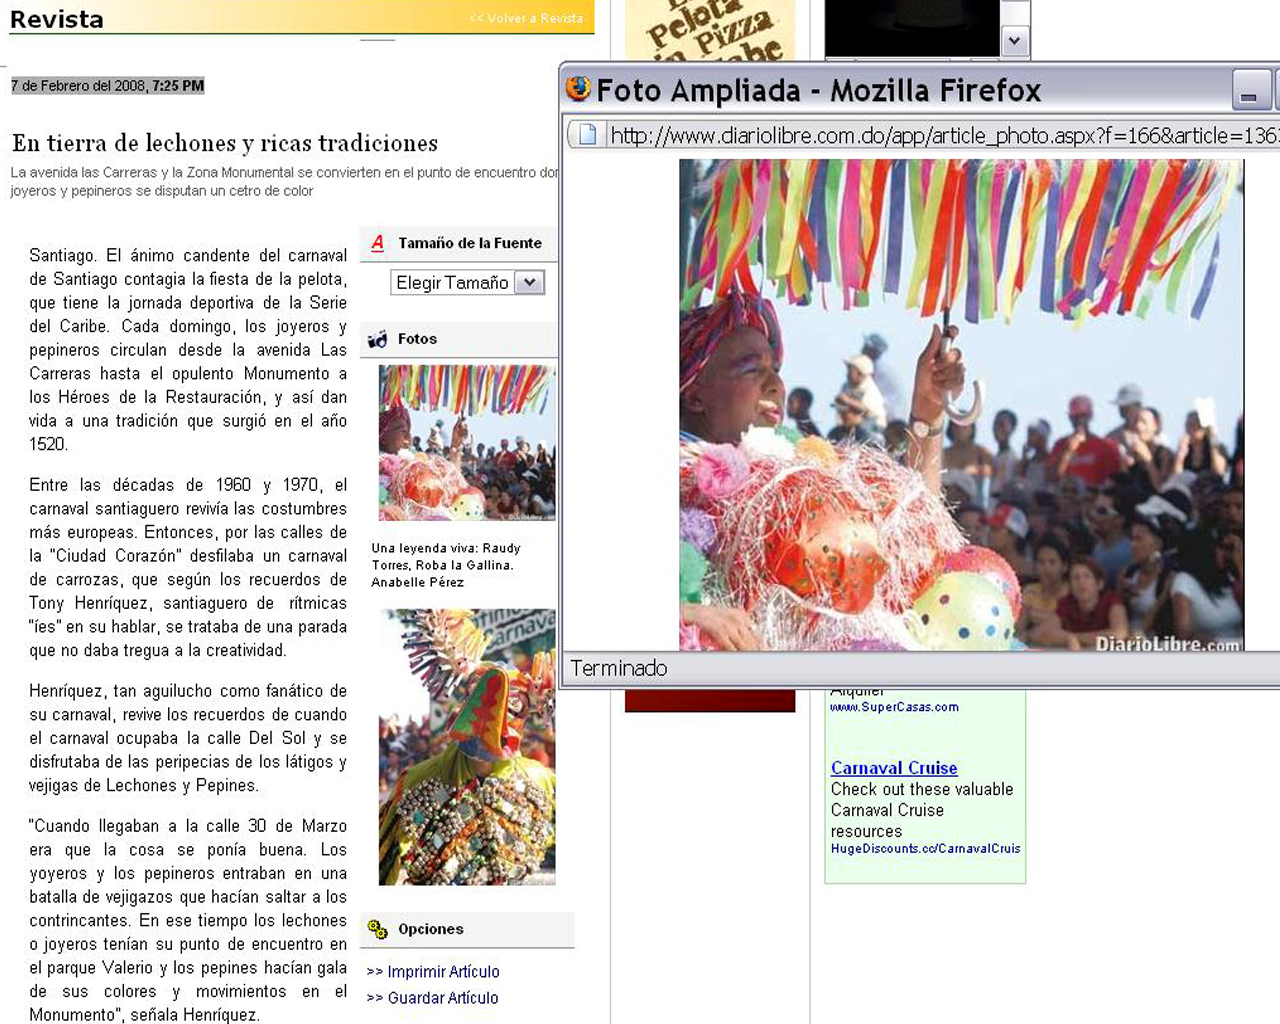 Diario libre-Revista:  web e impreso. Especial Feb 08